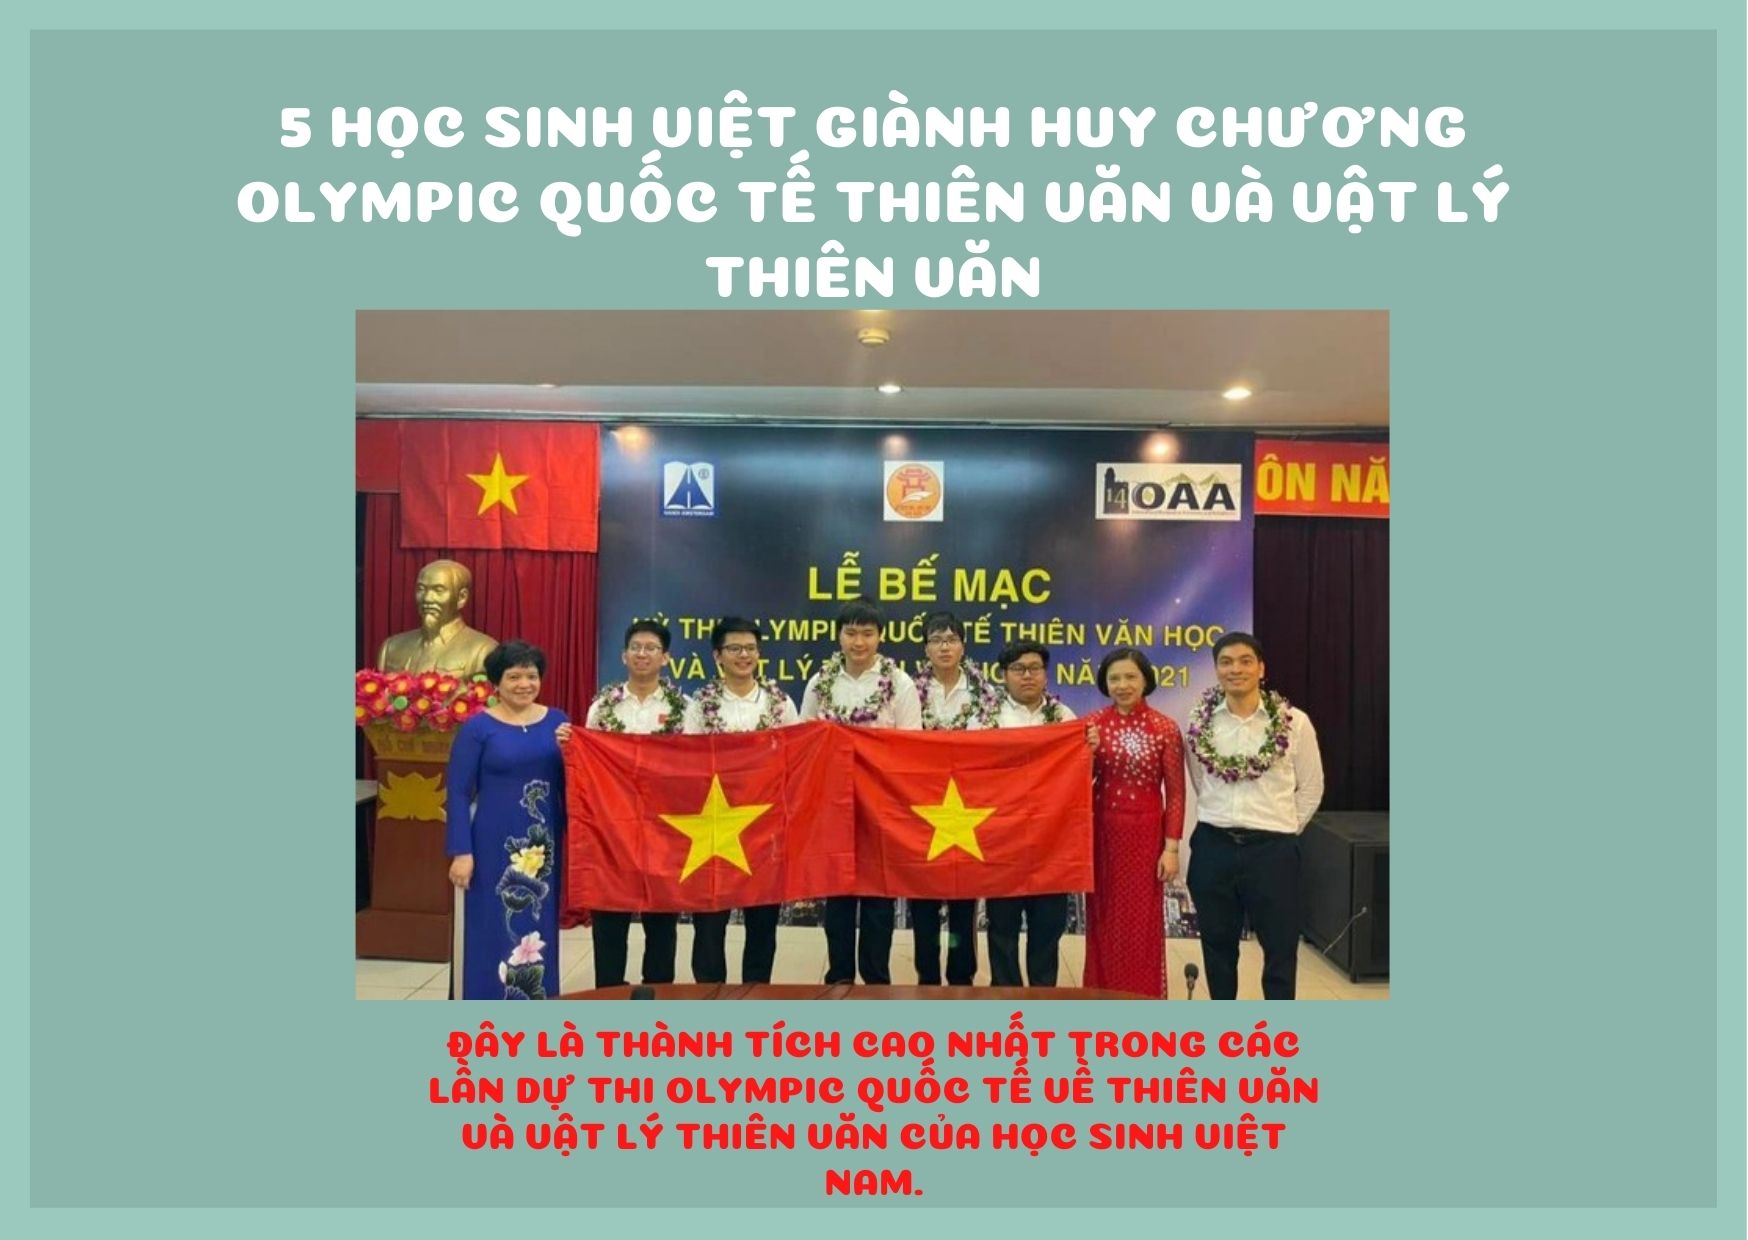 5 học sinh Việt giành huy chương Olympic Quốc tế Thiên văn và Vật lý Thiên văn